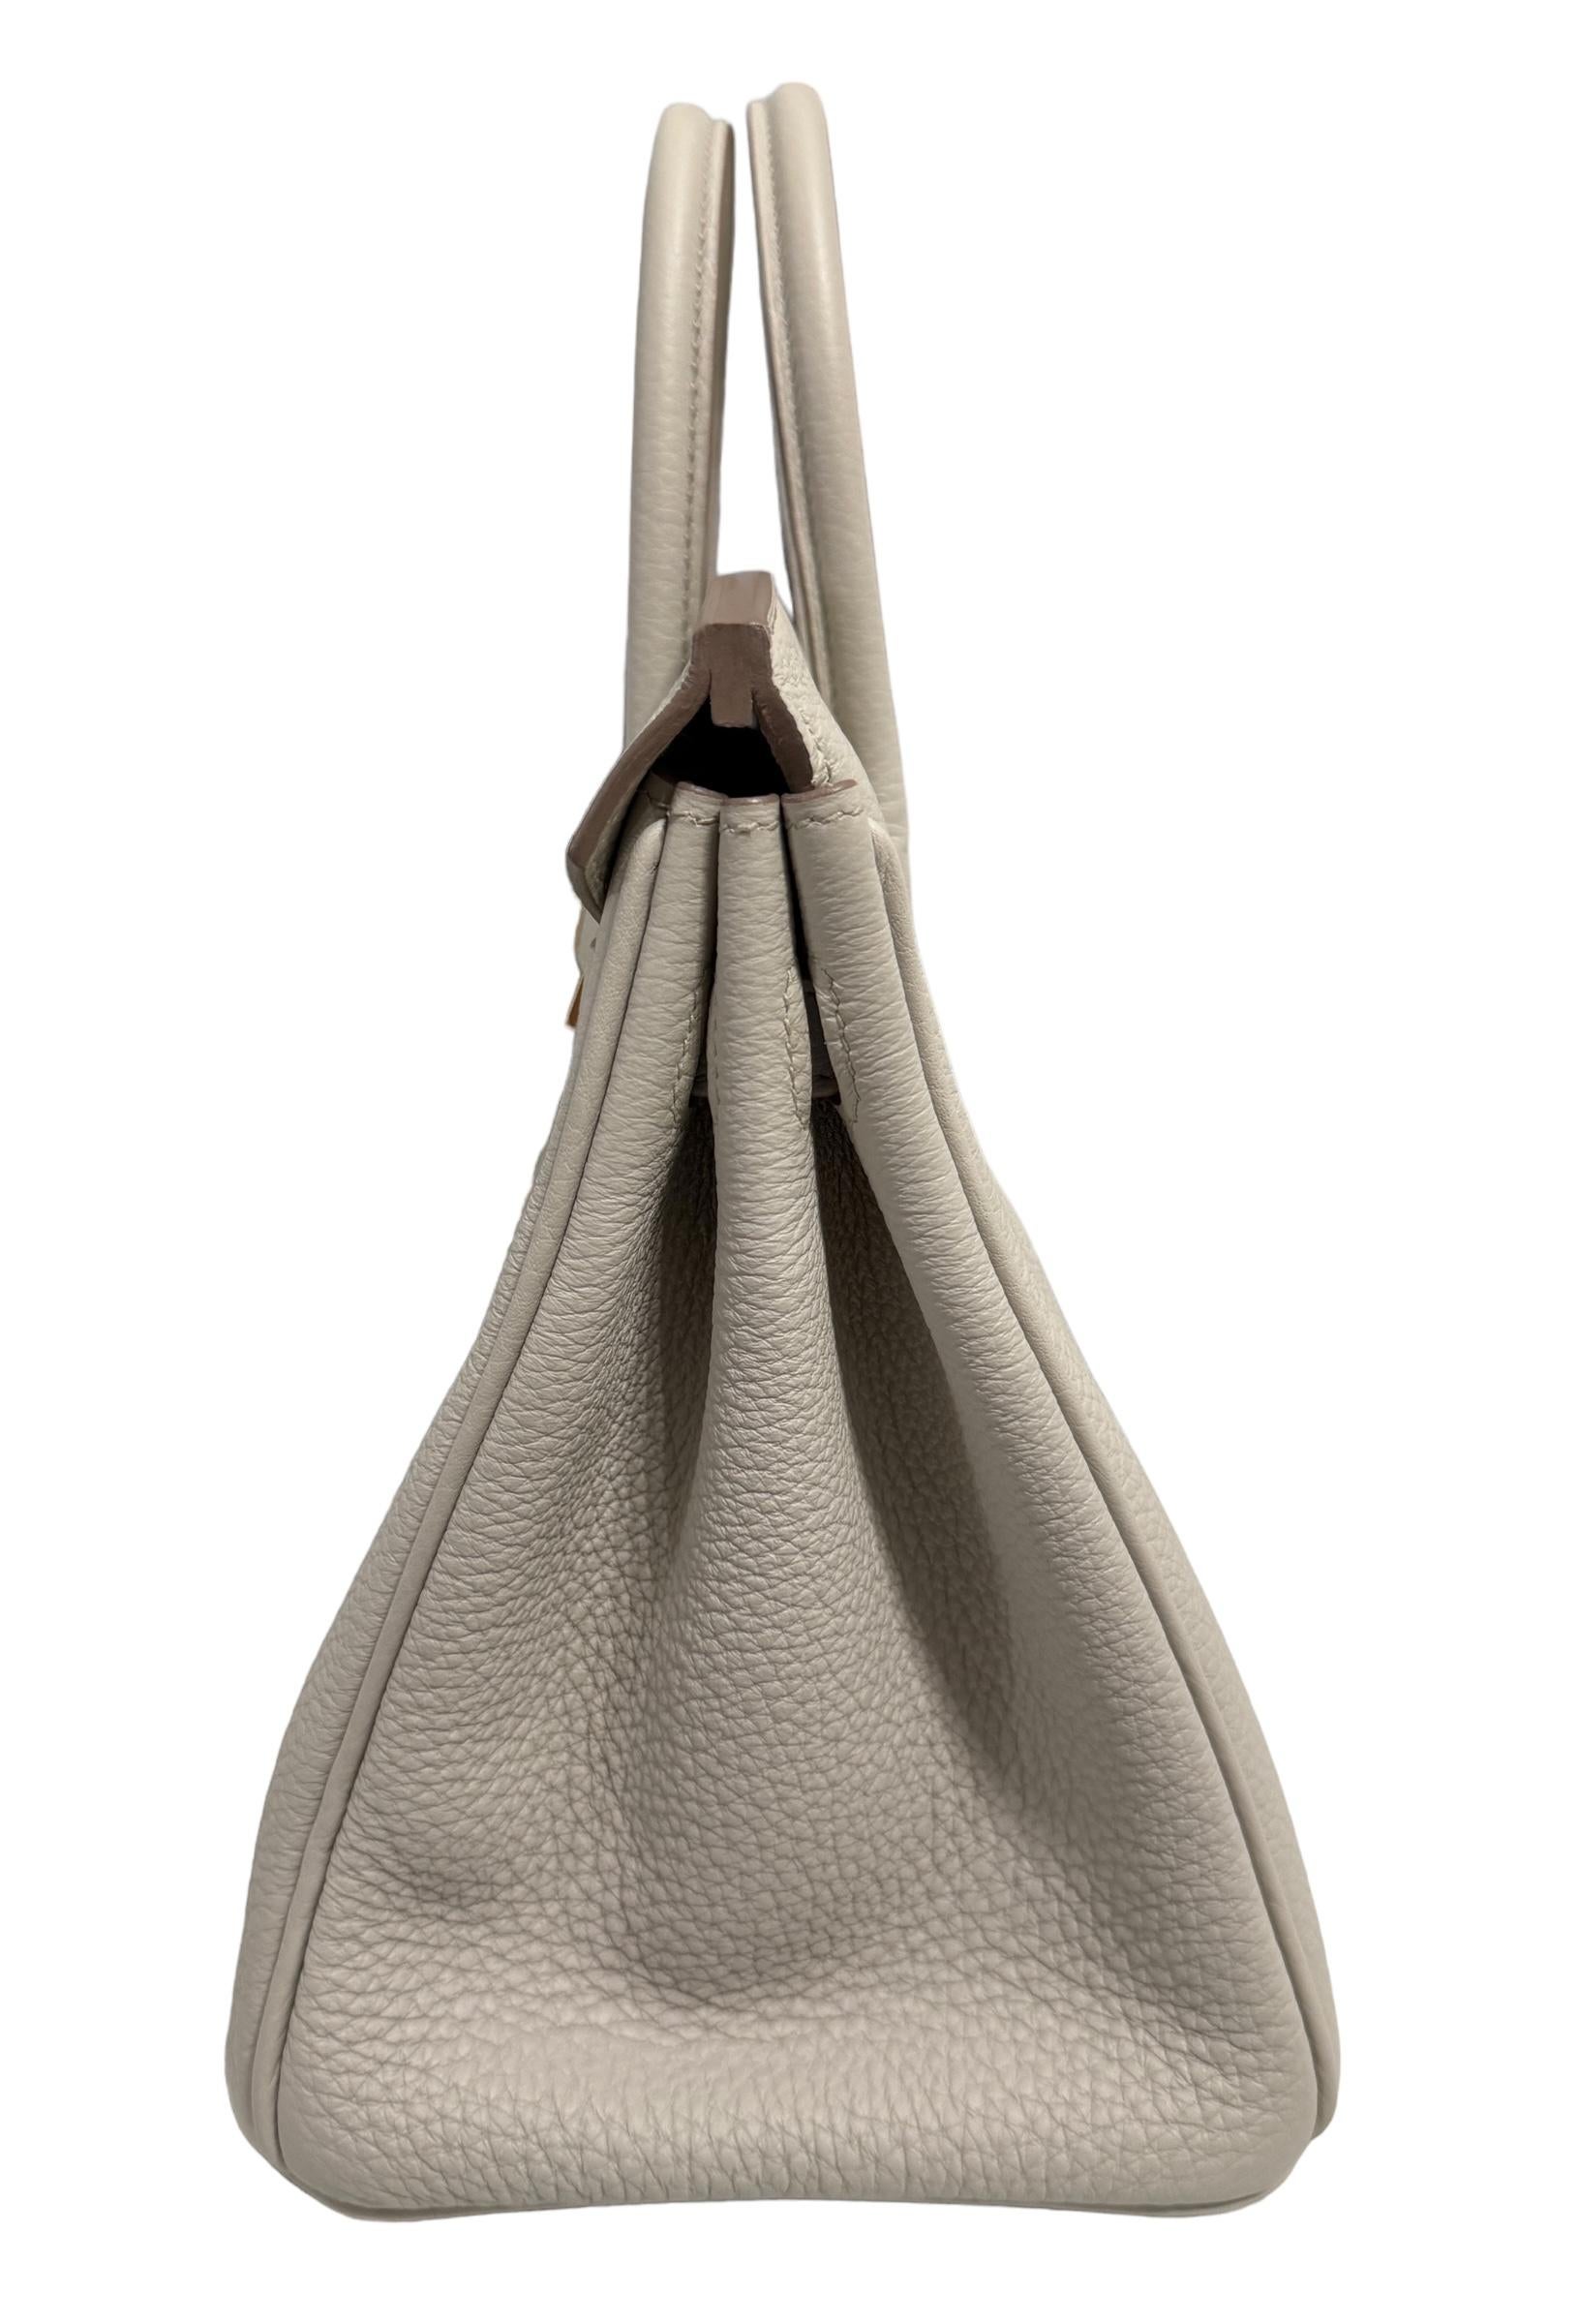 Hermes Birkin 25 Beton Beige Gray Togo Leather Handbag Rose Gold Hardware  For Sale 1